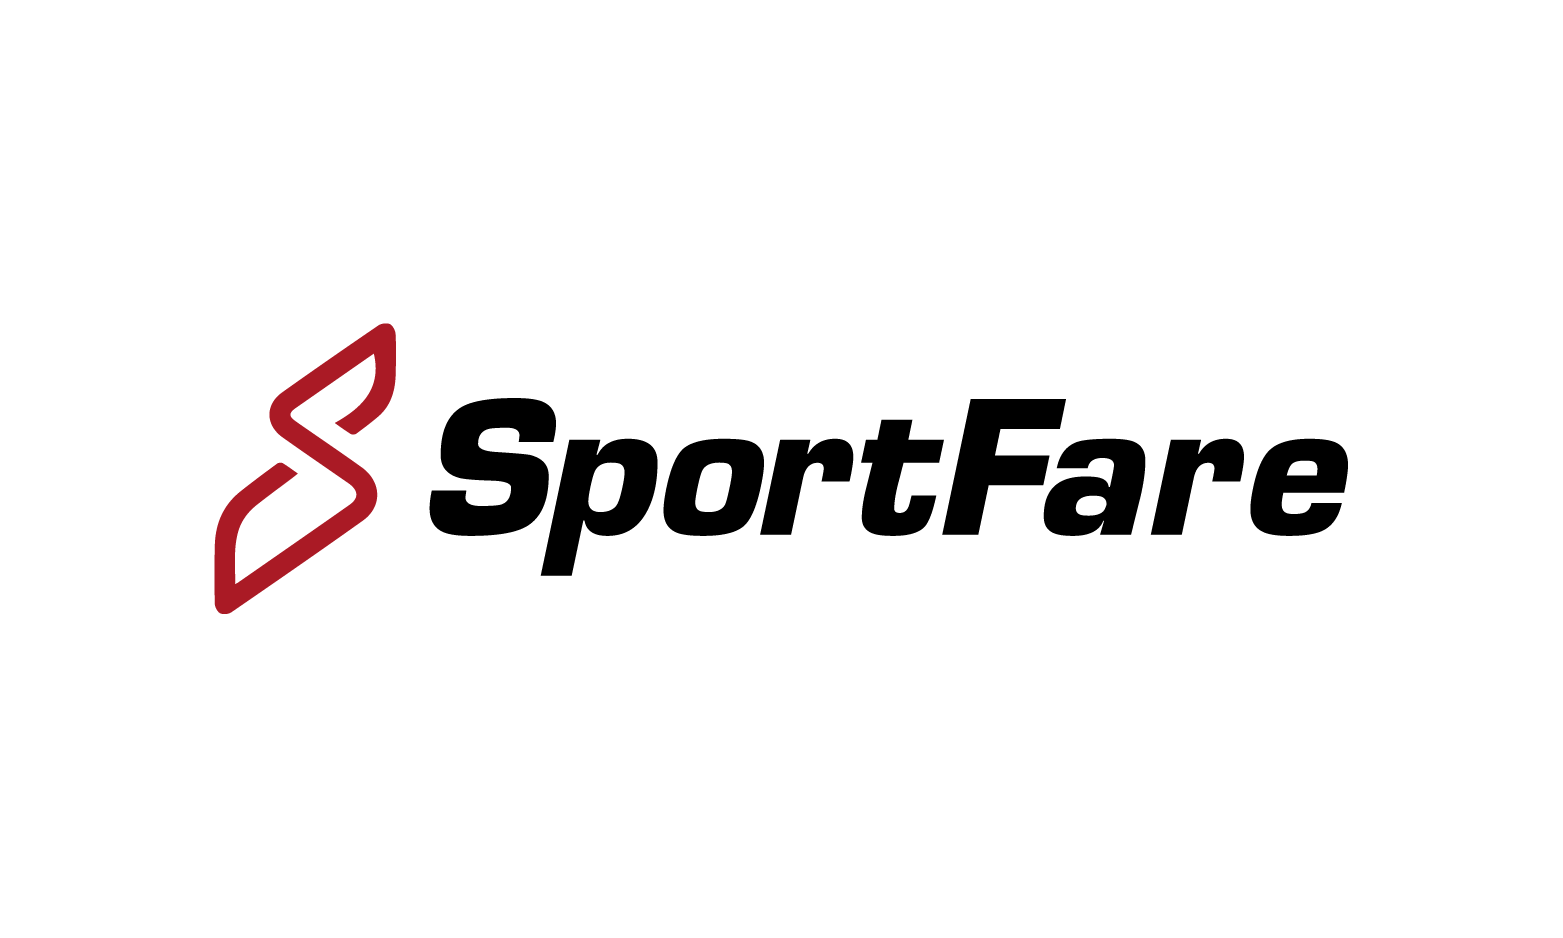 SportFare.com - Creative brandable domain for sale